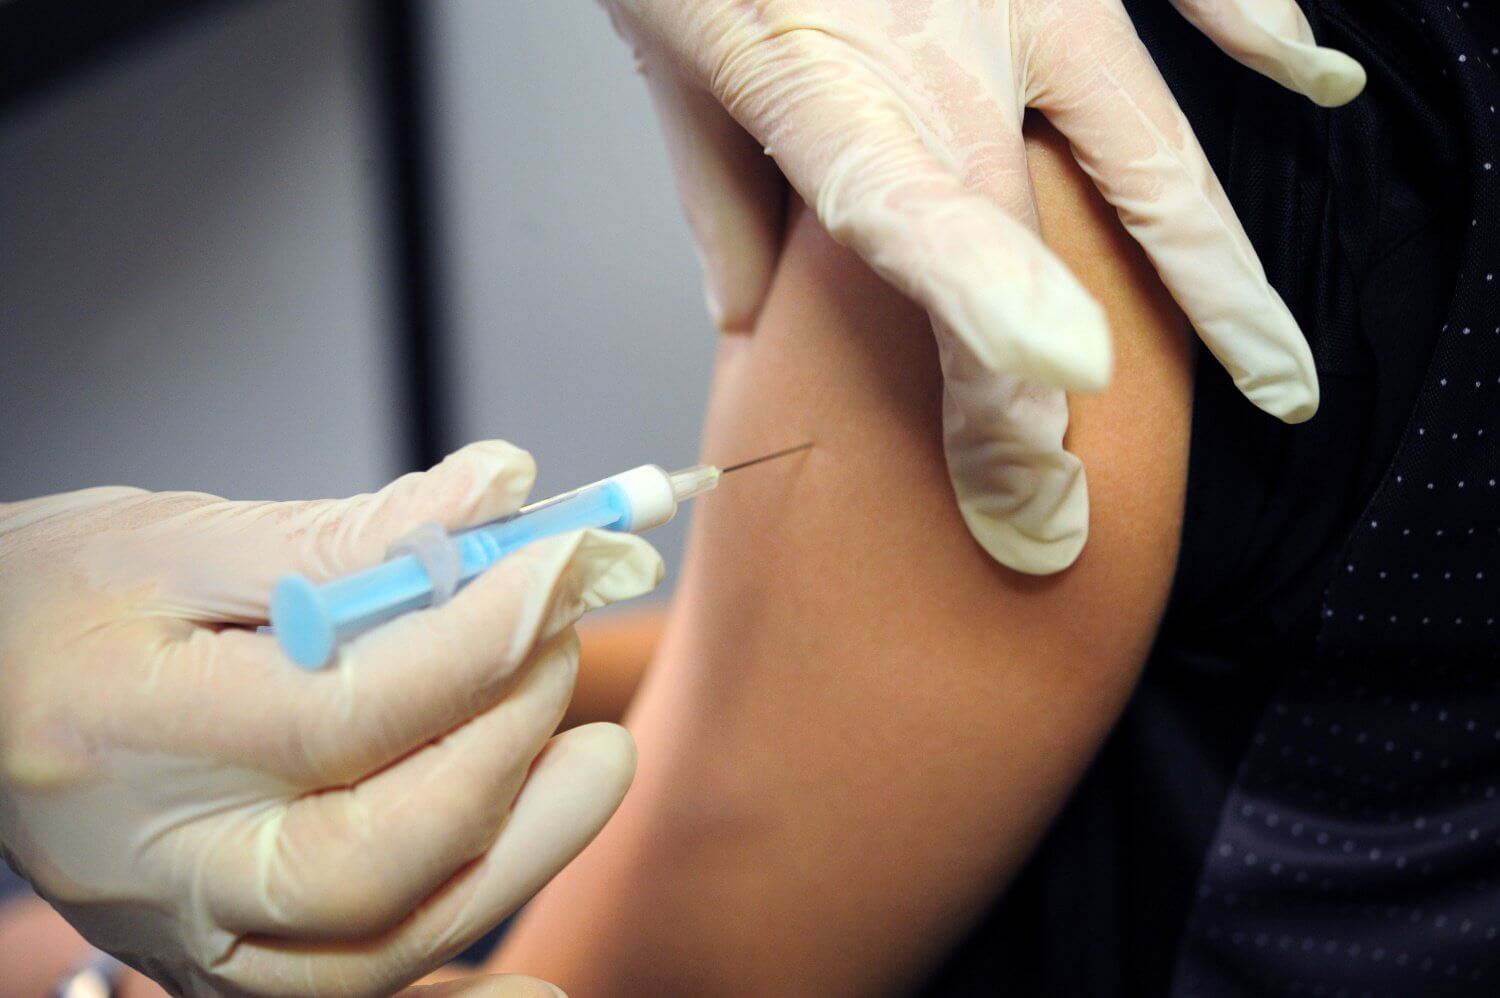 Эффективность вакцины для подростков «Спутник М» оценили в 93%